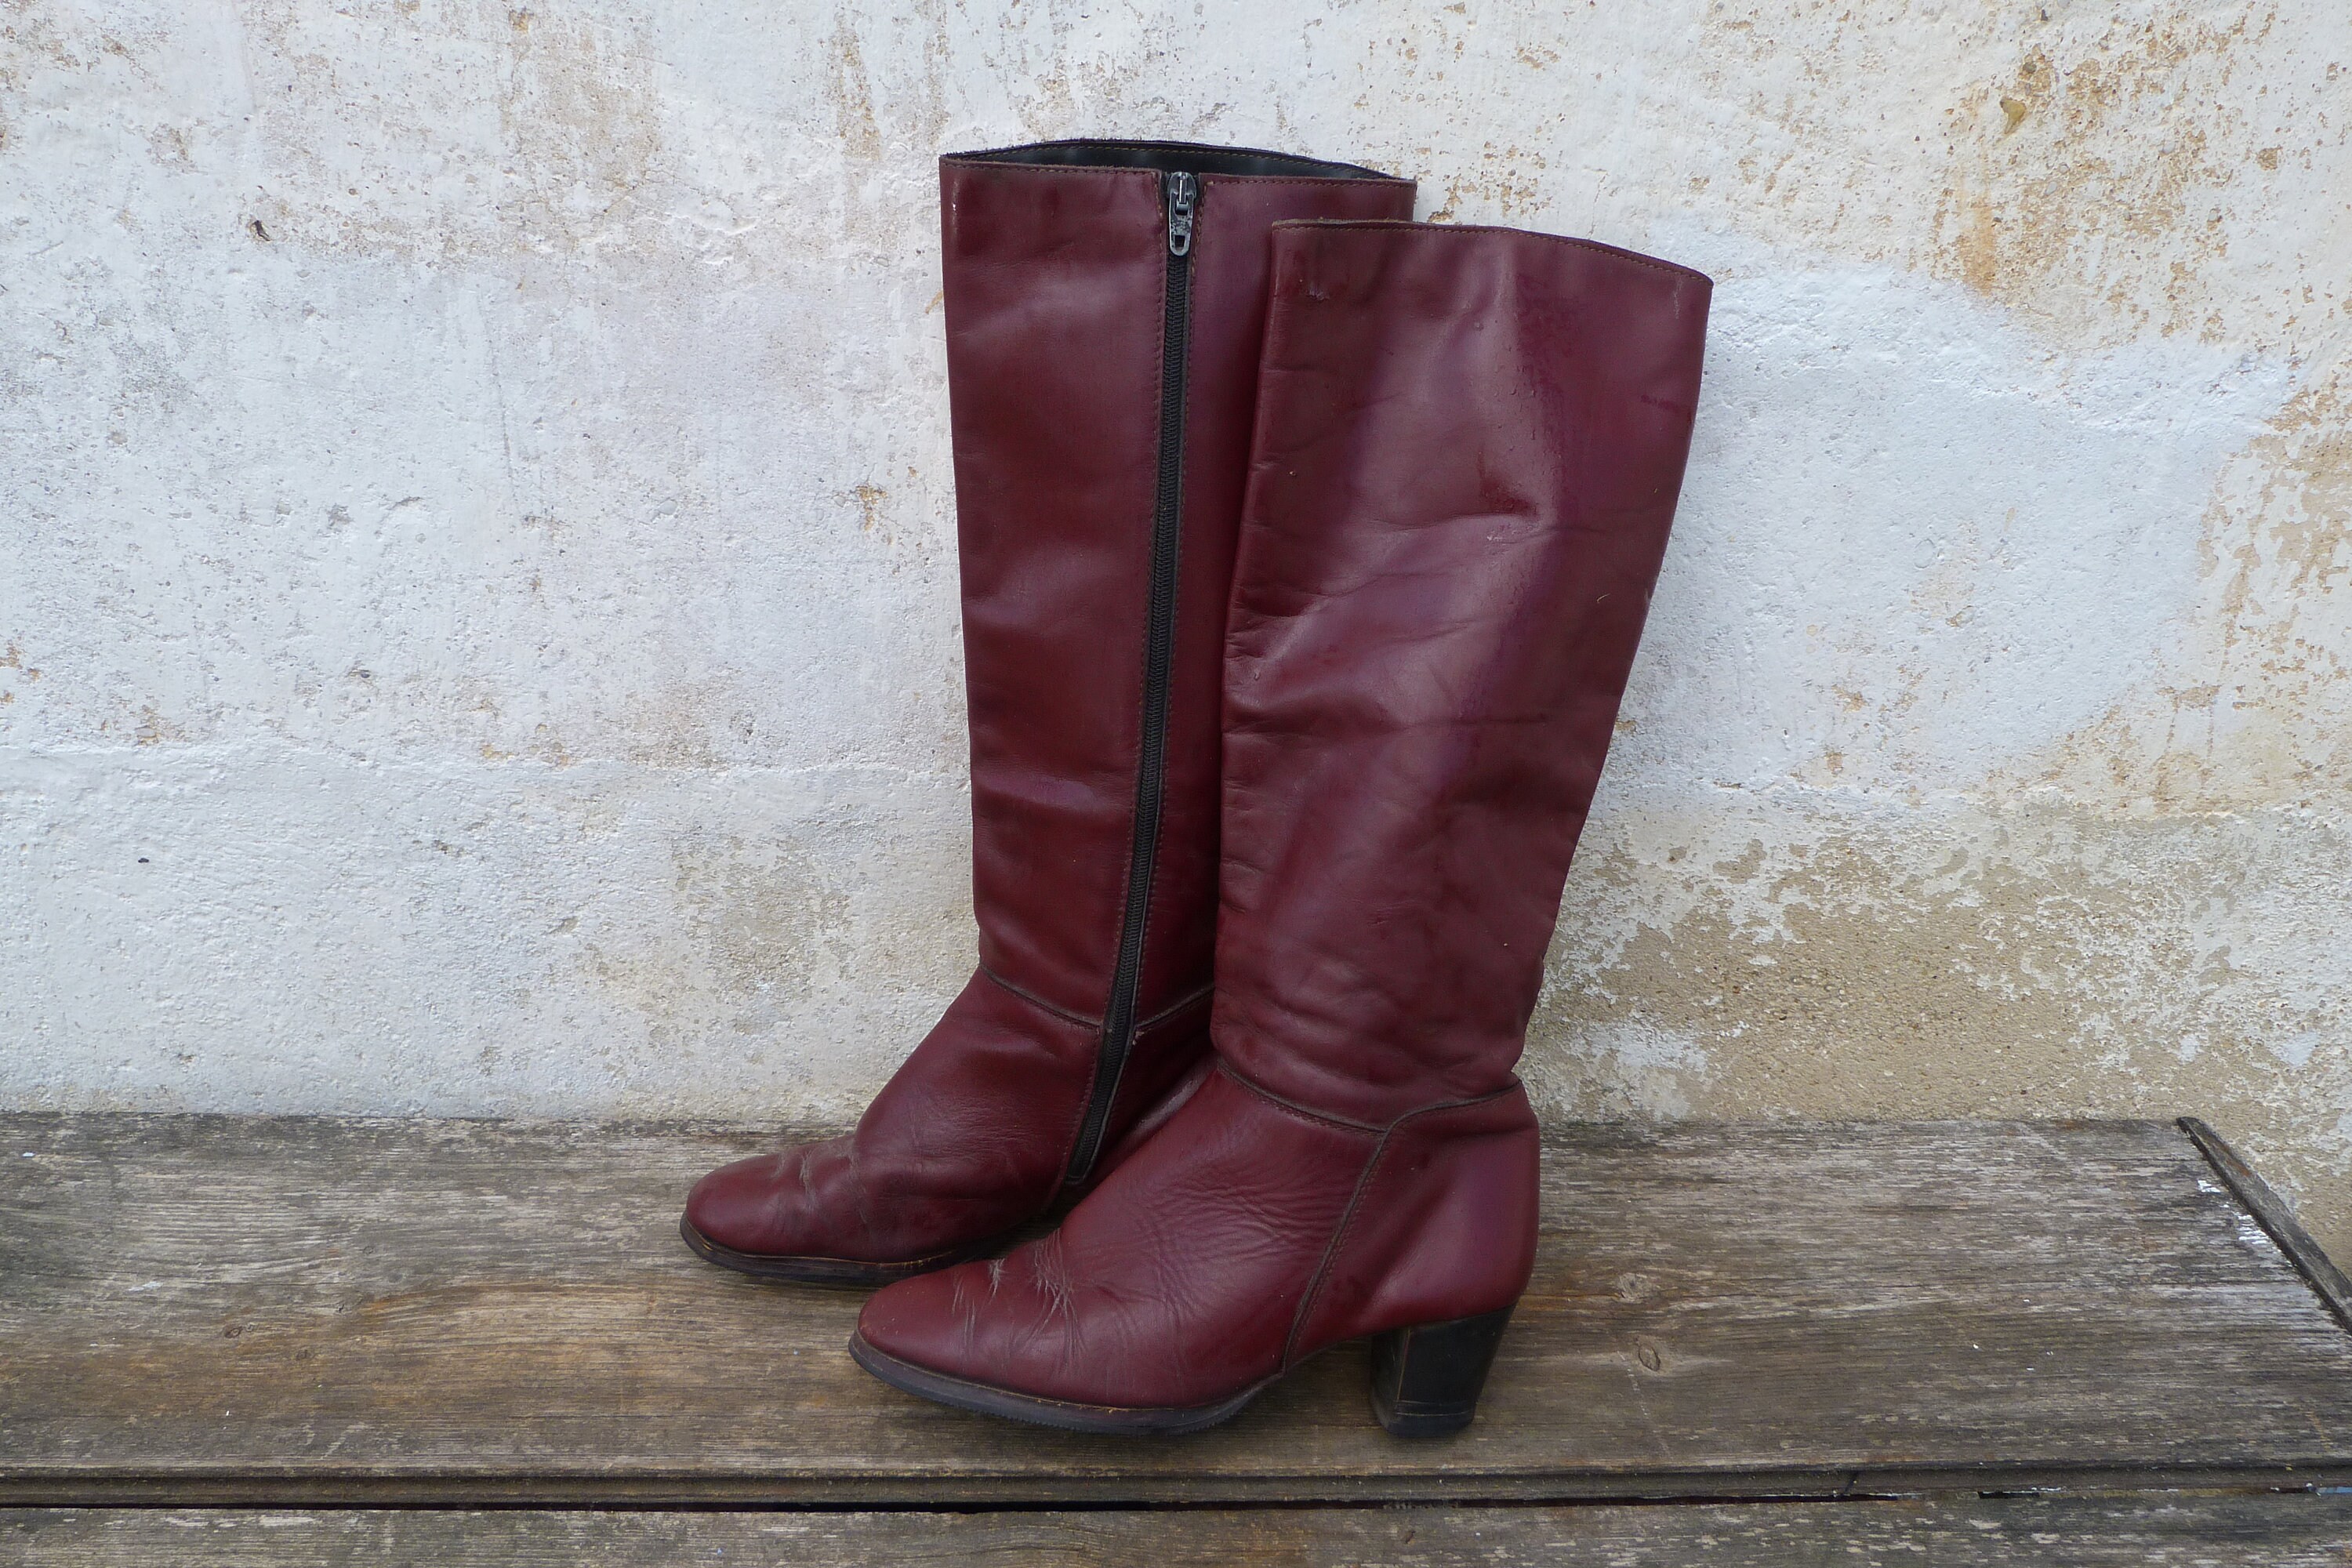 Leather boots-booties for woman burgundy brownish color Mexican Artisan handmade Schoenen damesschoenen Laarzen Enkellaarsjes 